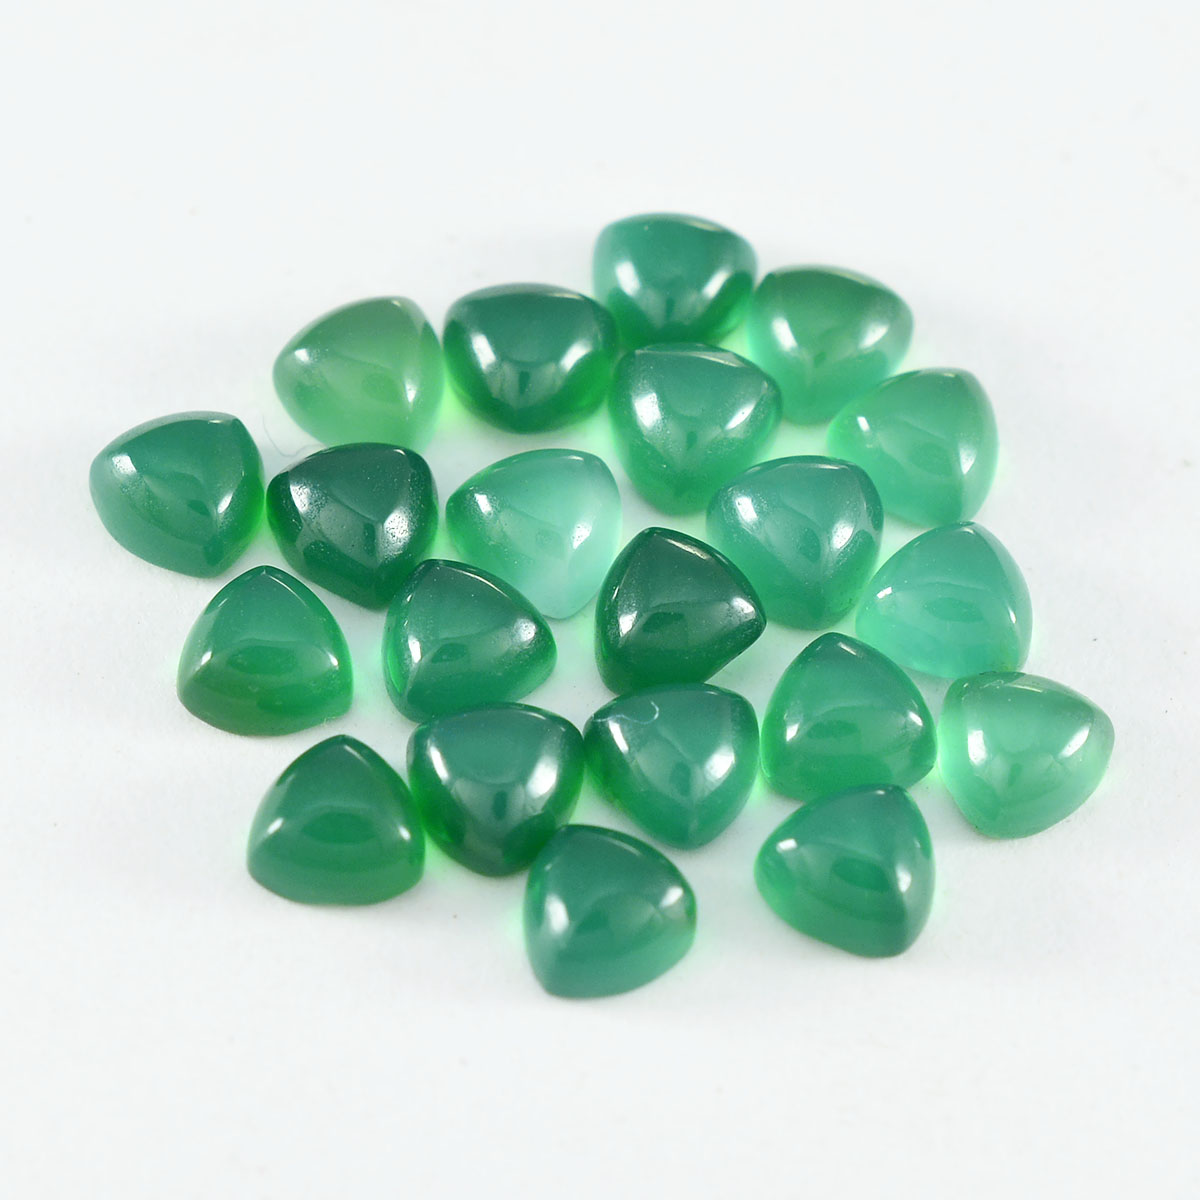 Riyogems 1 Stück grüner Onyx-Cabochon, 5 x 5 mm, Billionenform, wunderschöner Qualitäts-Edelstein